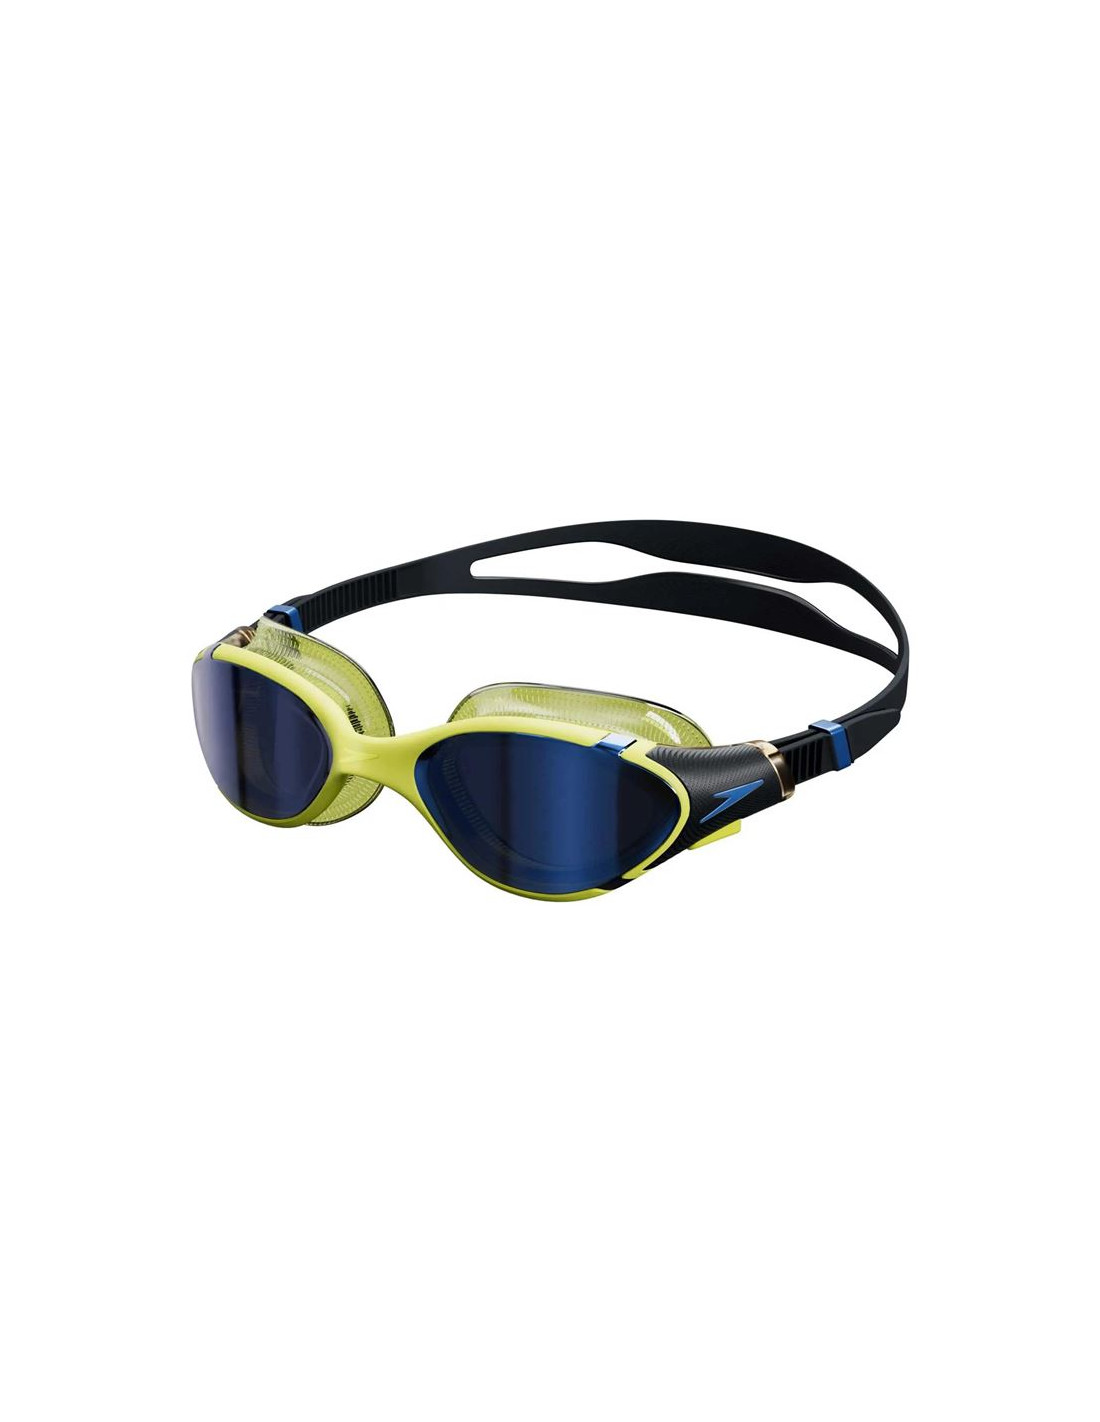 Lunettes de natation pour homme et femme, lunettes de natation, lunettes de  natation pour adultes, anti-buée, anti-UV, anti-éblouissement, sangle